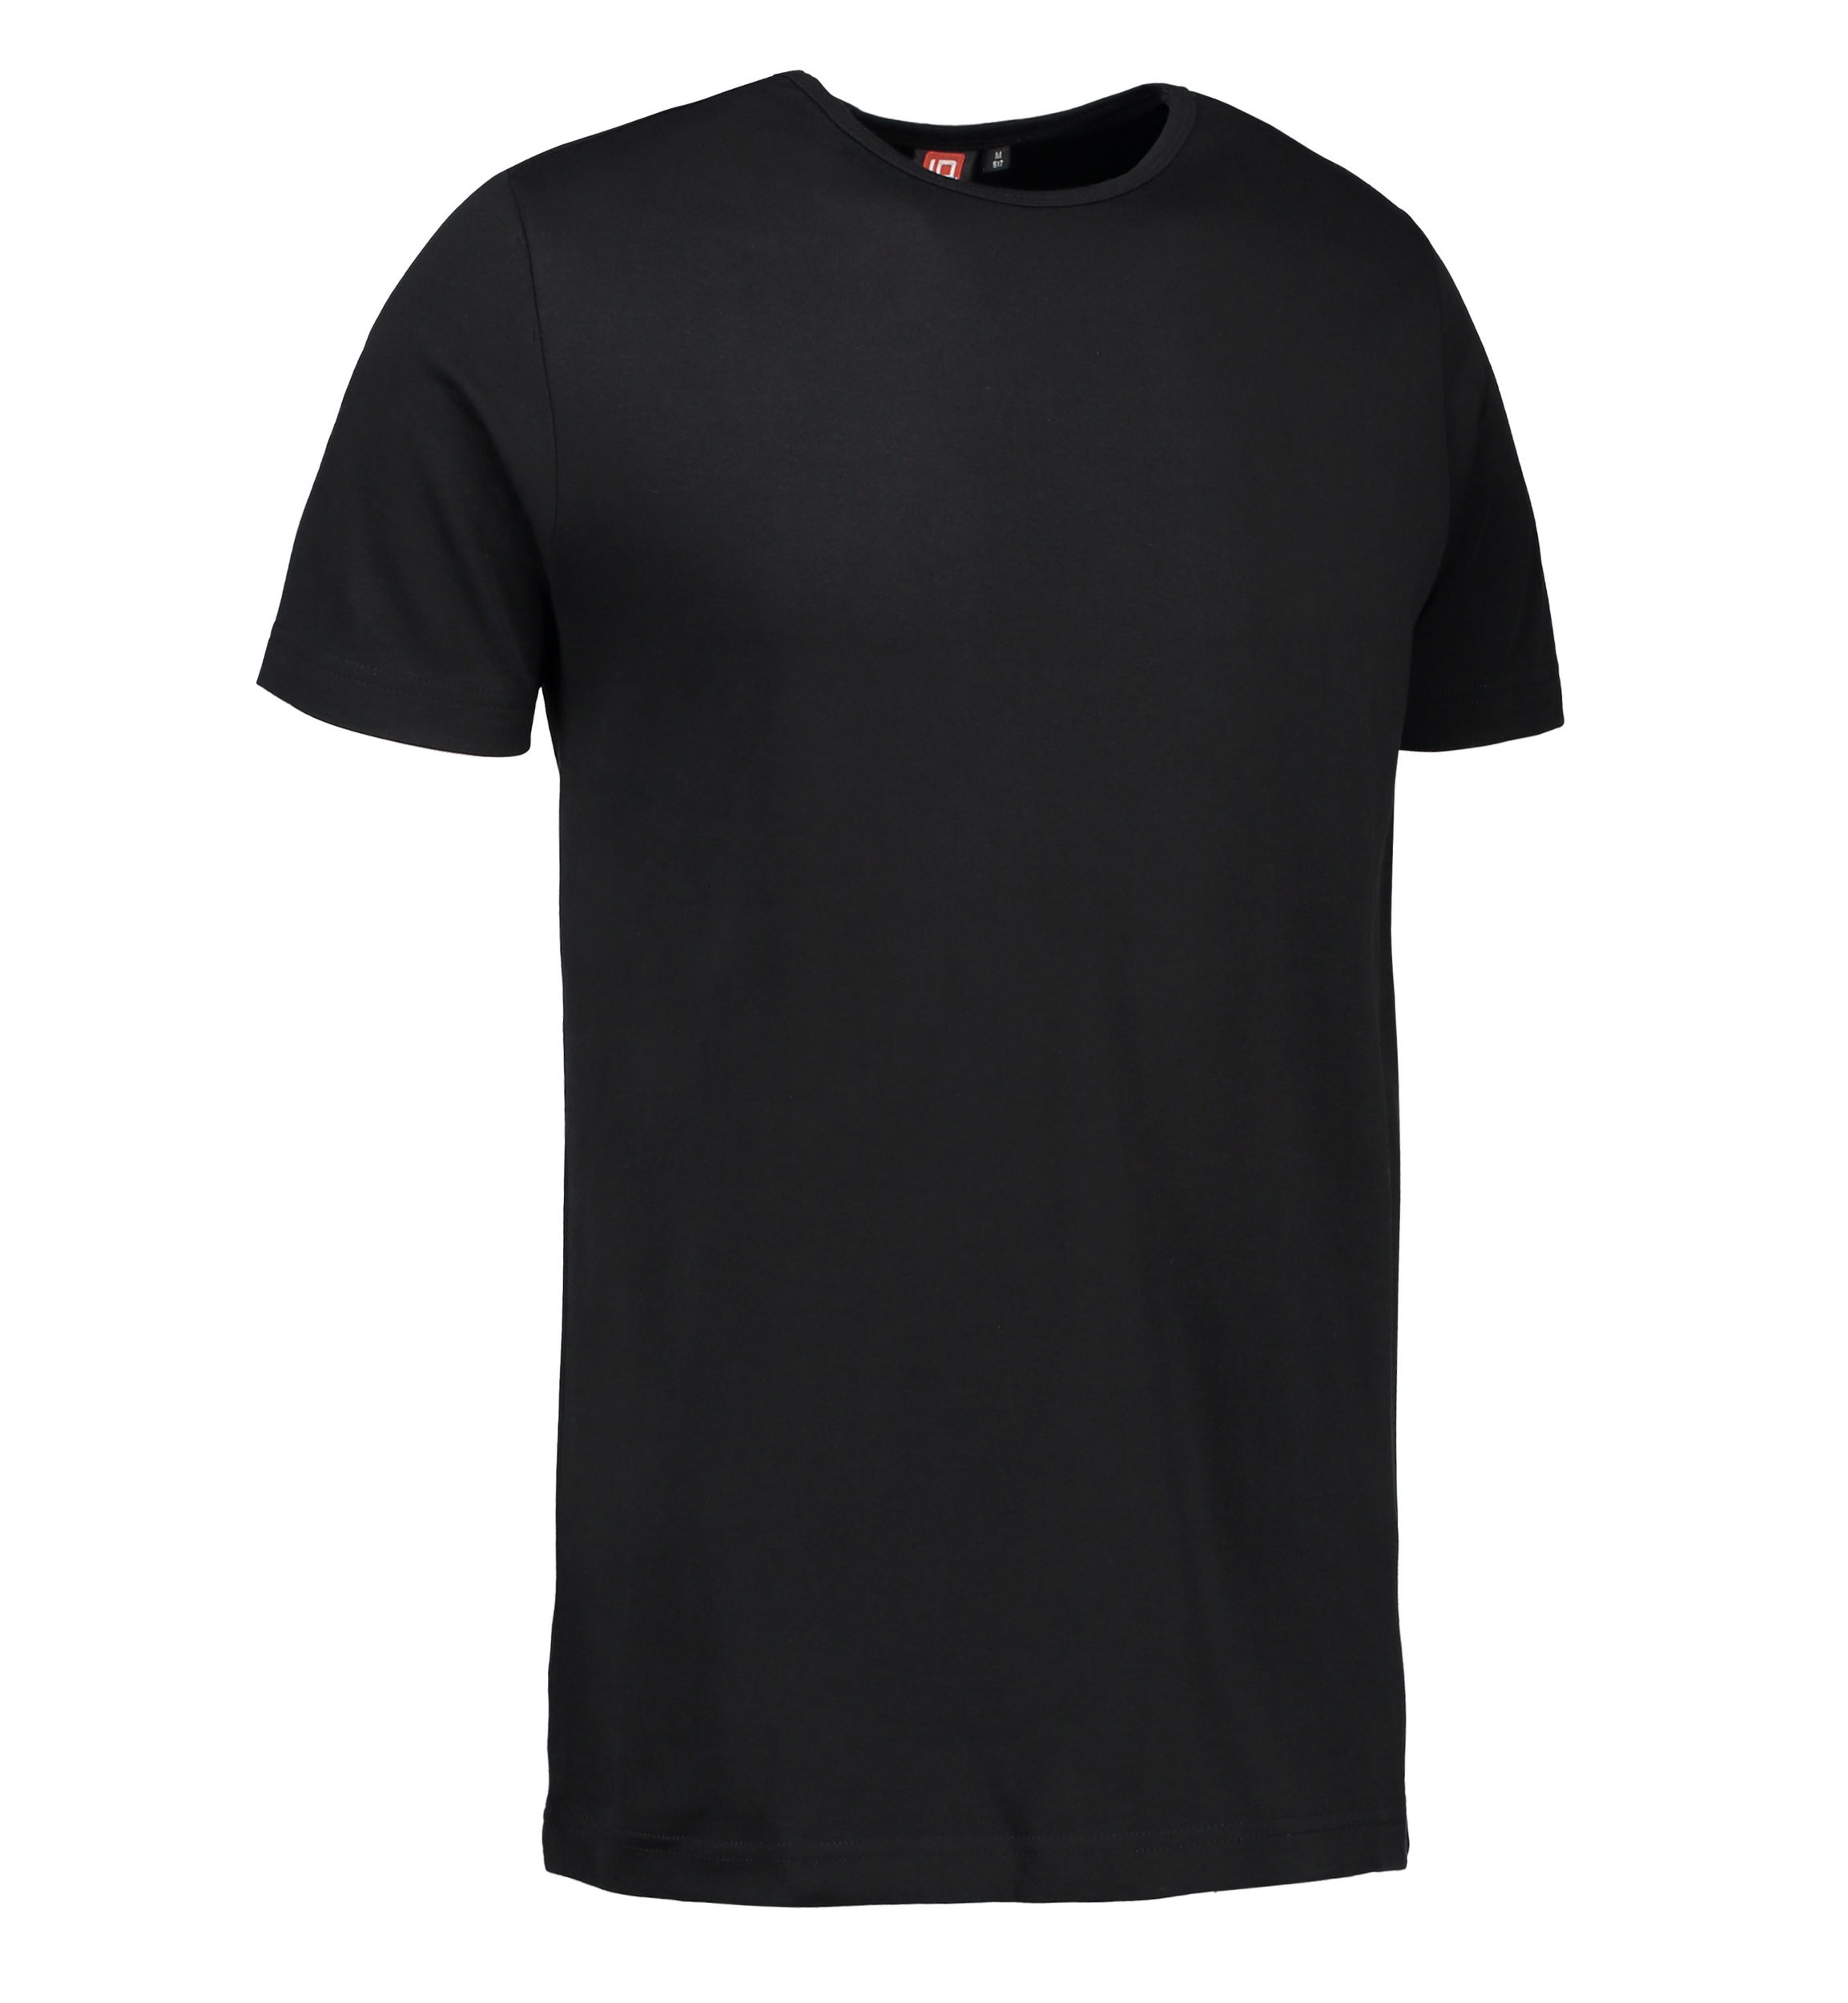 Billede af Sort t-shirt med rund hals til mænd - S hos Sygeplejebutikken.dk